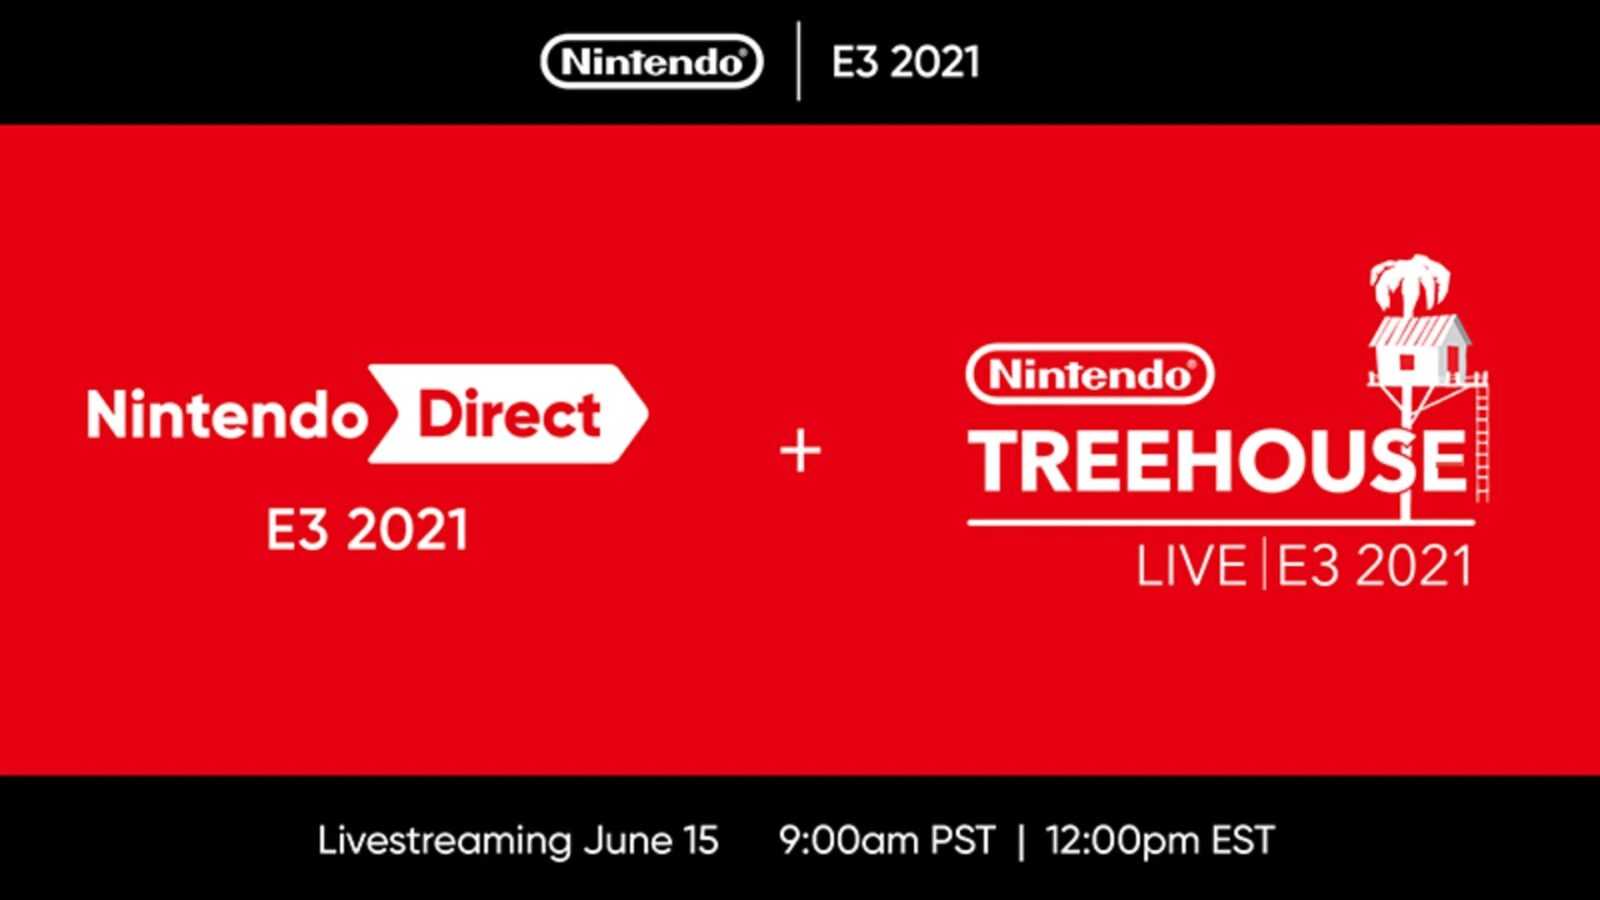 Nintendo annuncia l'E3 Direct e lo spettacolo Treehouse